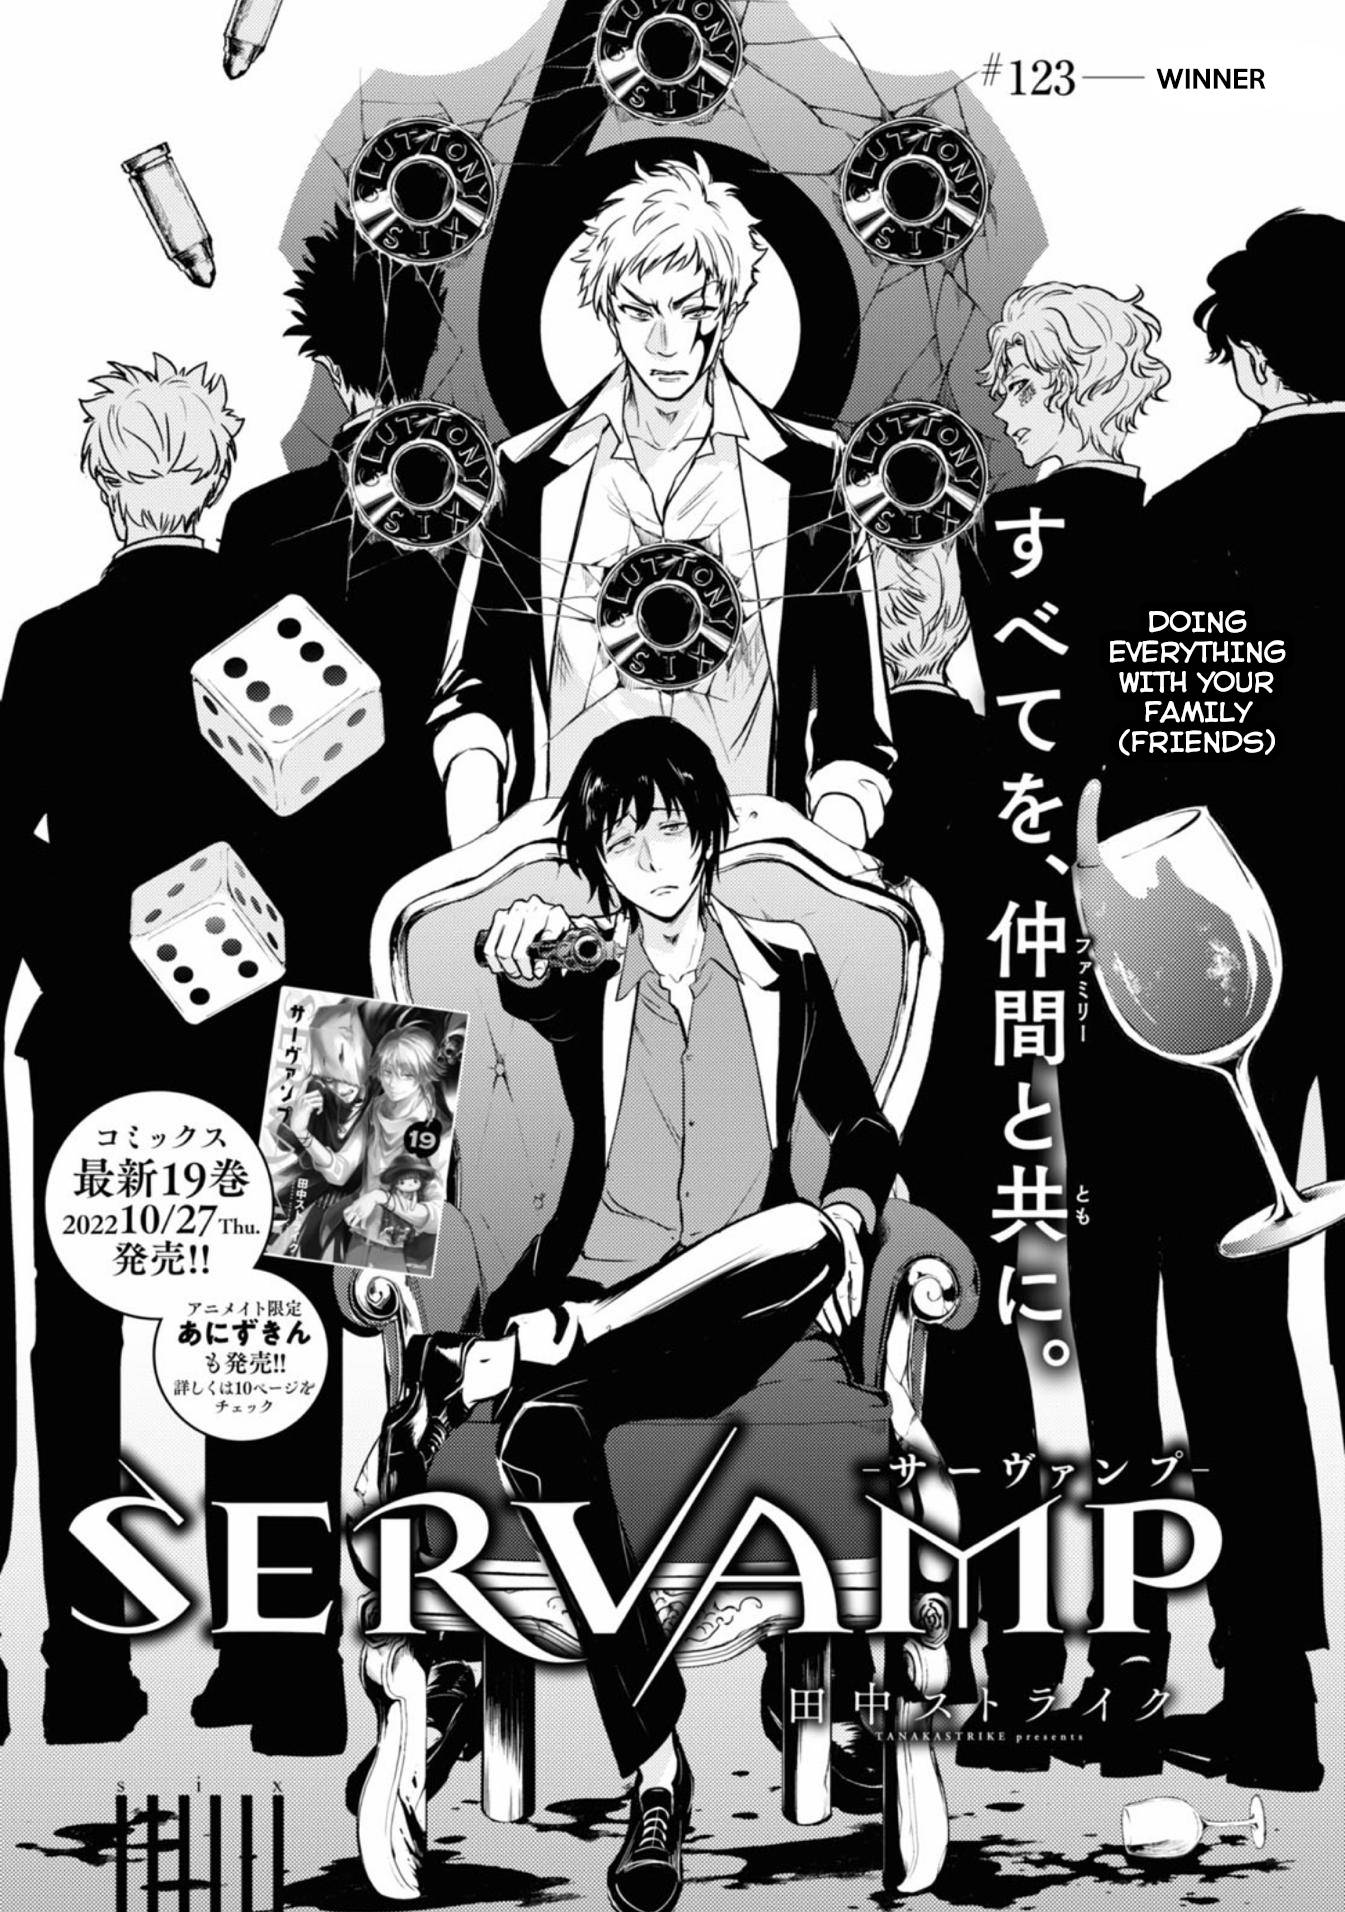 Servamp - chapter 123 - #1